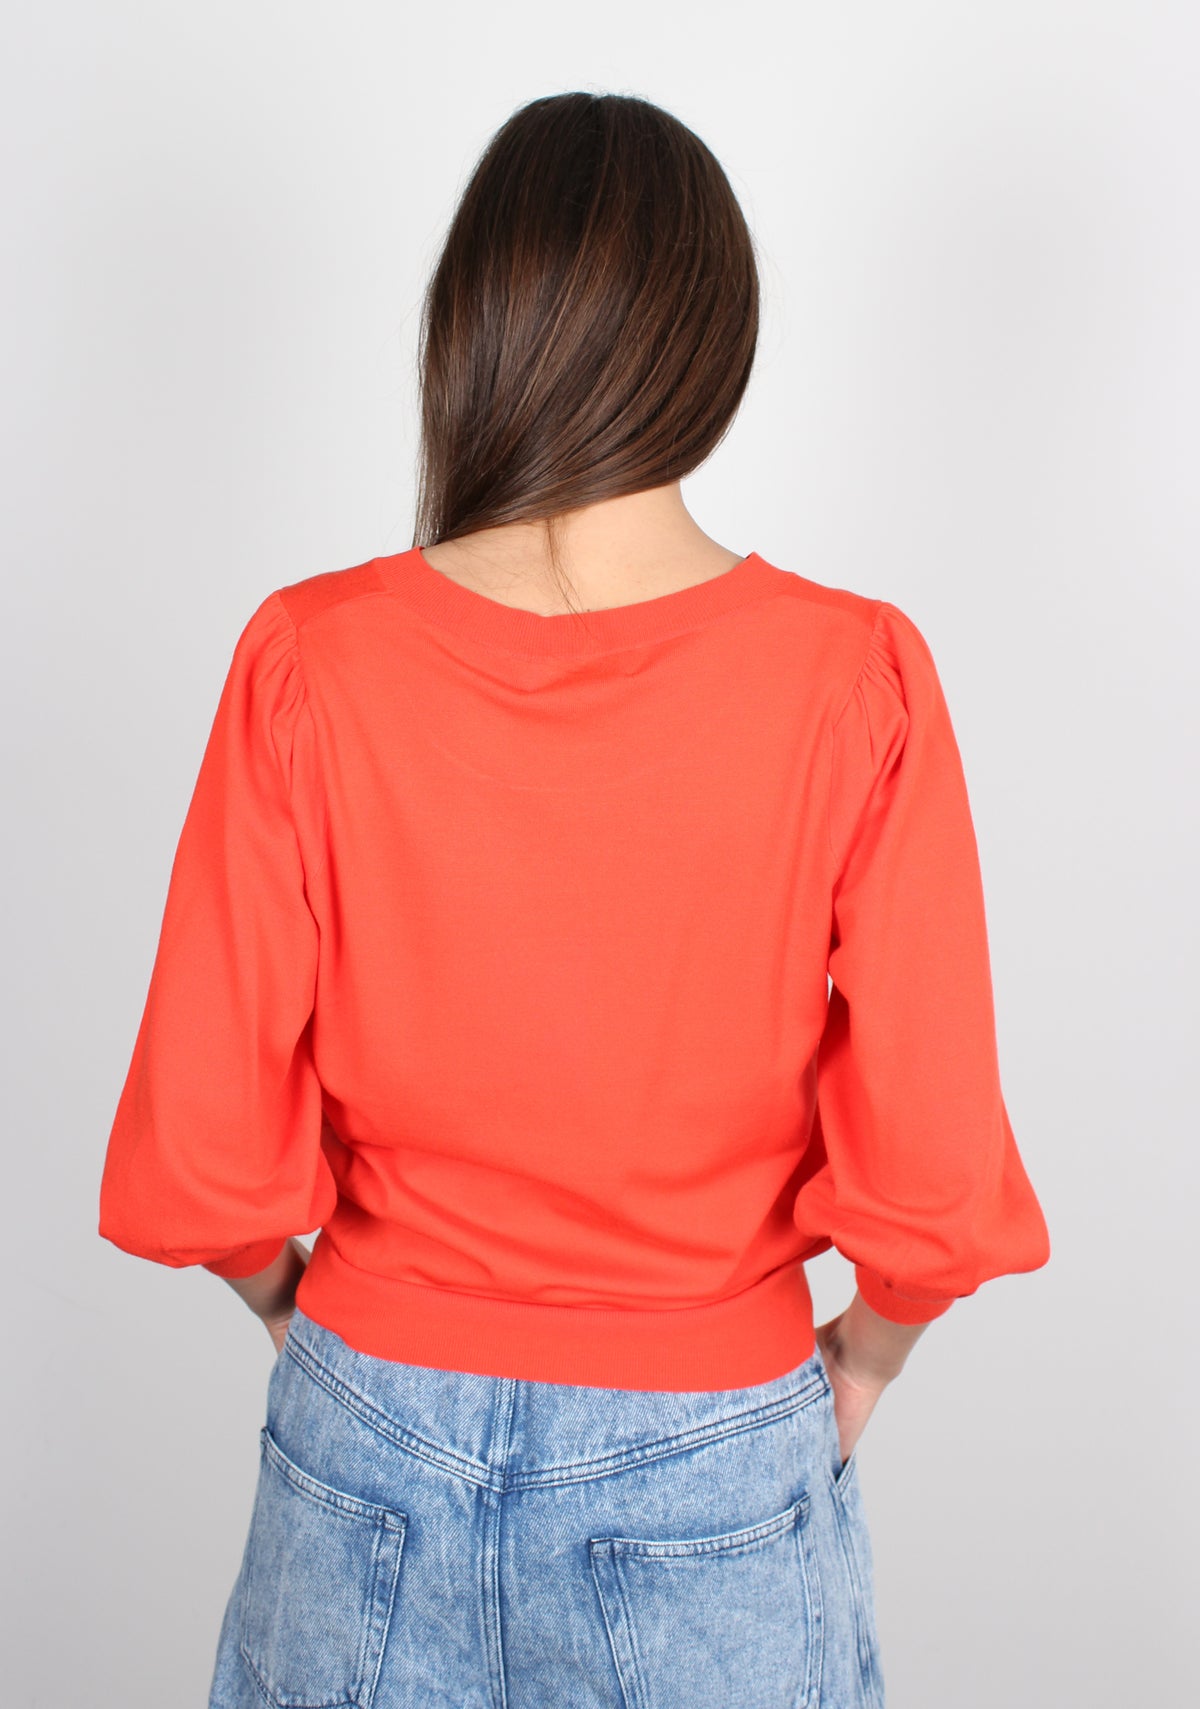 EA Blonk Sweater in Blood Orange